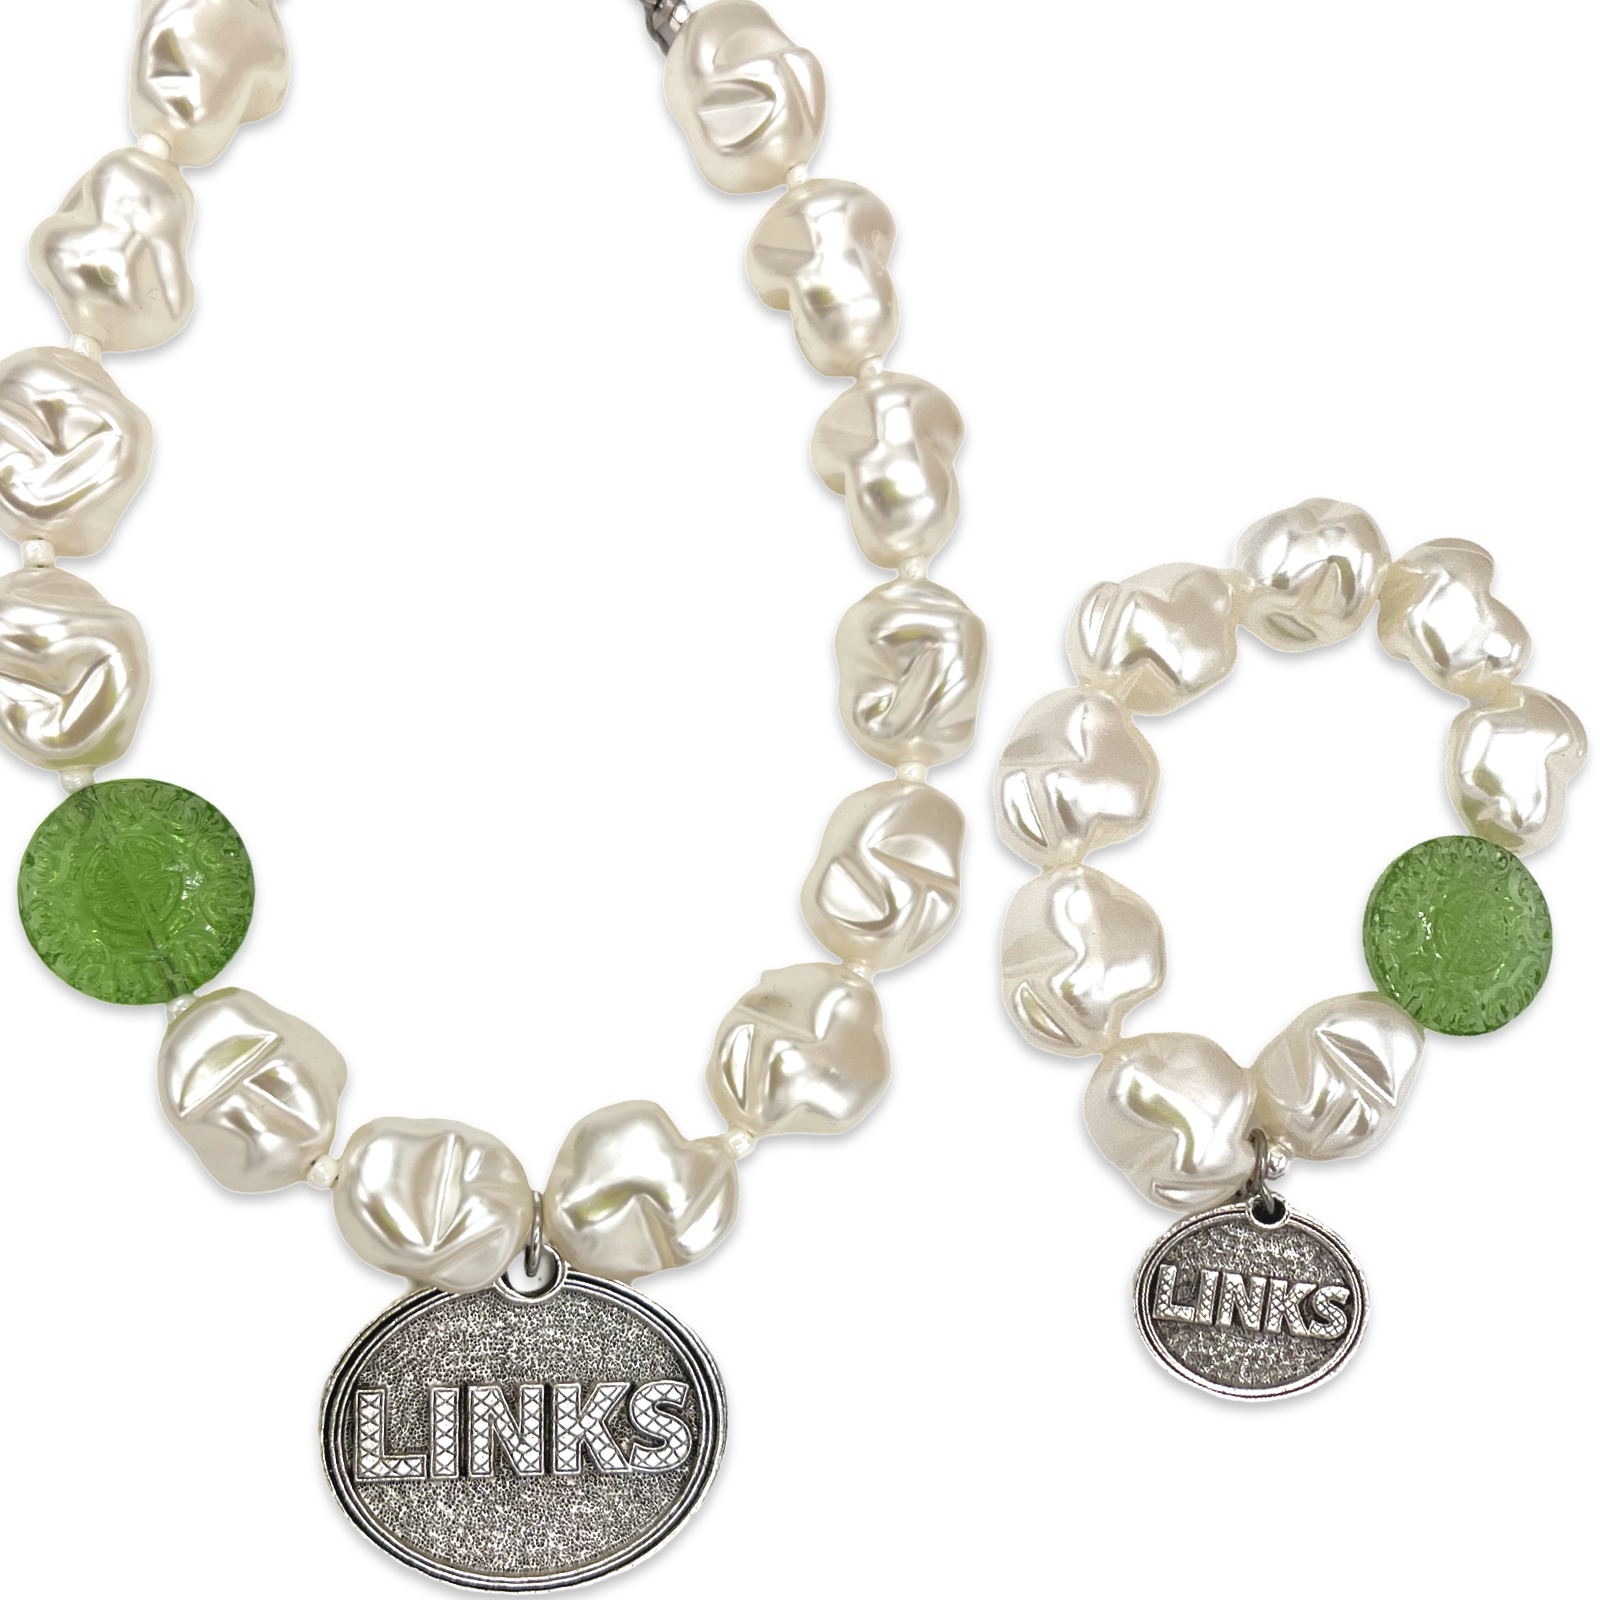 Links Soft Spring Necklace